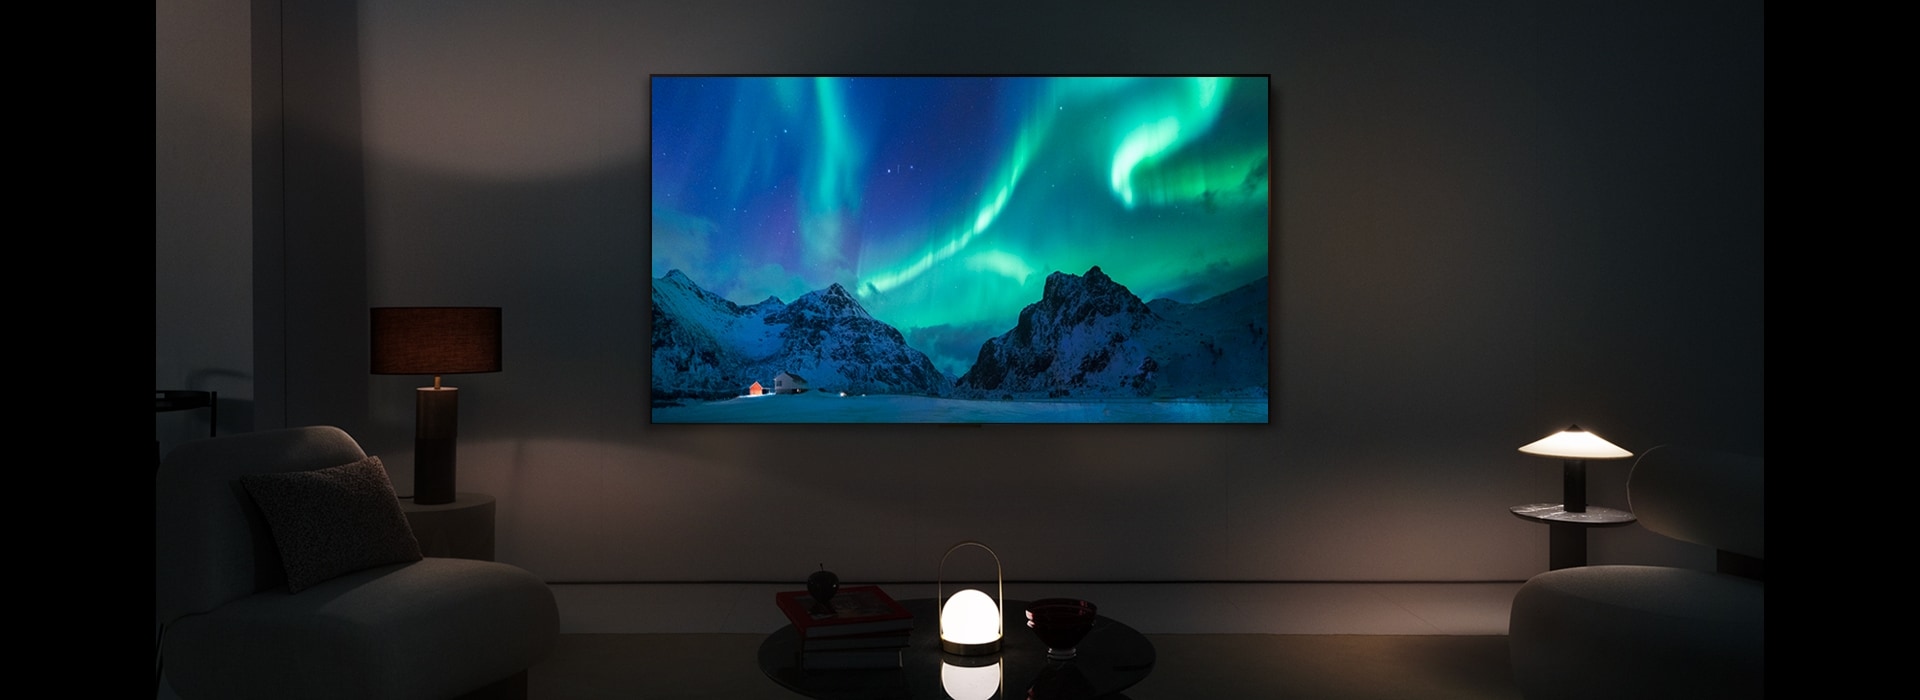 LG OLED TV di ruang tamu modern pada malam hari. Gambar layar aurora borealis ditampilkan dengan tingkat kecerahan ideal.